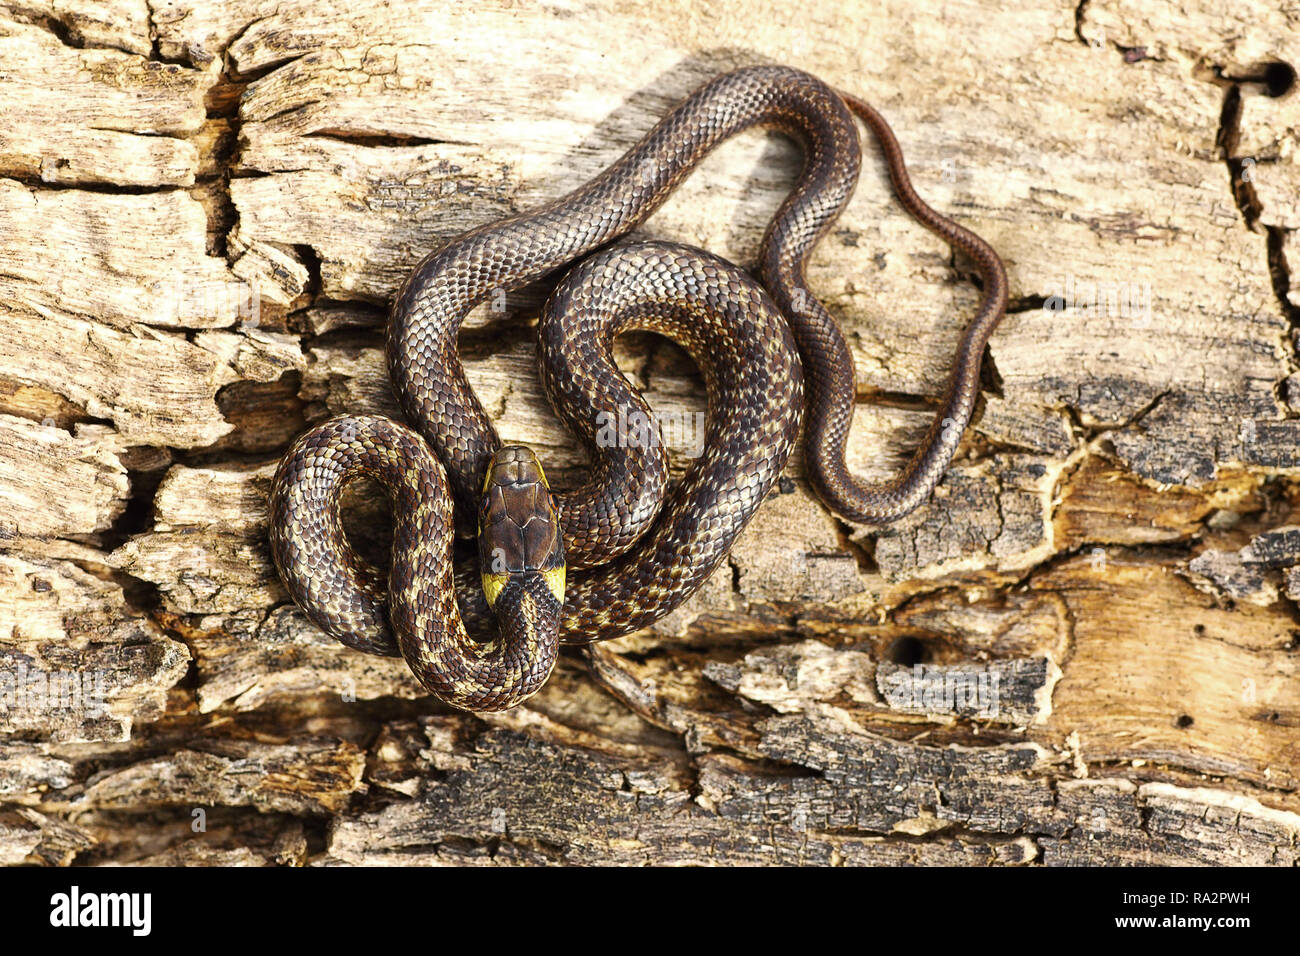 Longueur totale juveline aesculapian snake se prélassent sur bois ( moignon Zamenis longissimus ) Banque D'Images